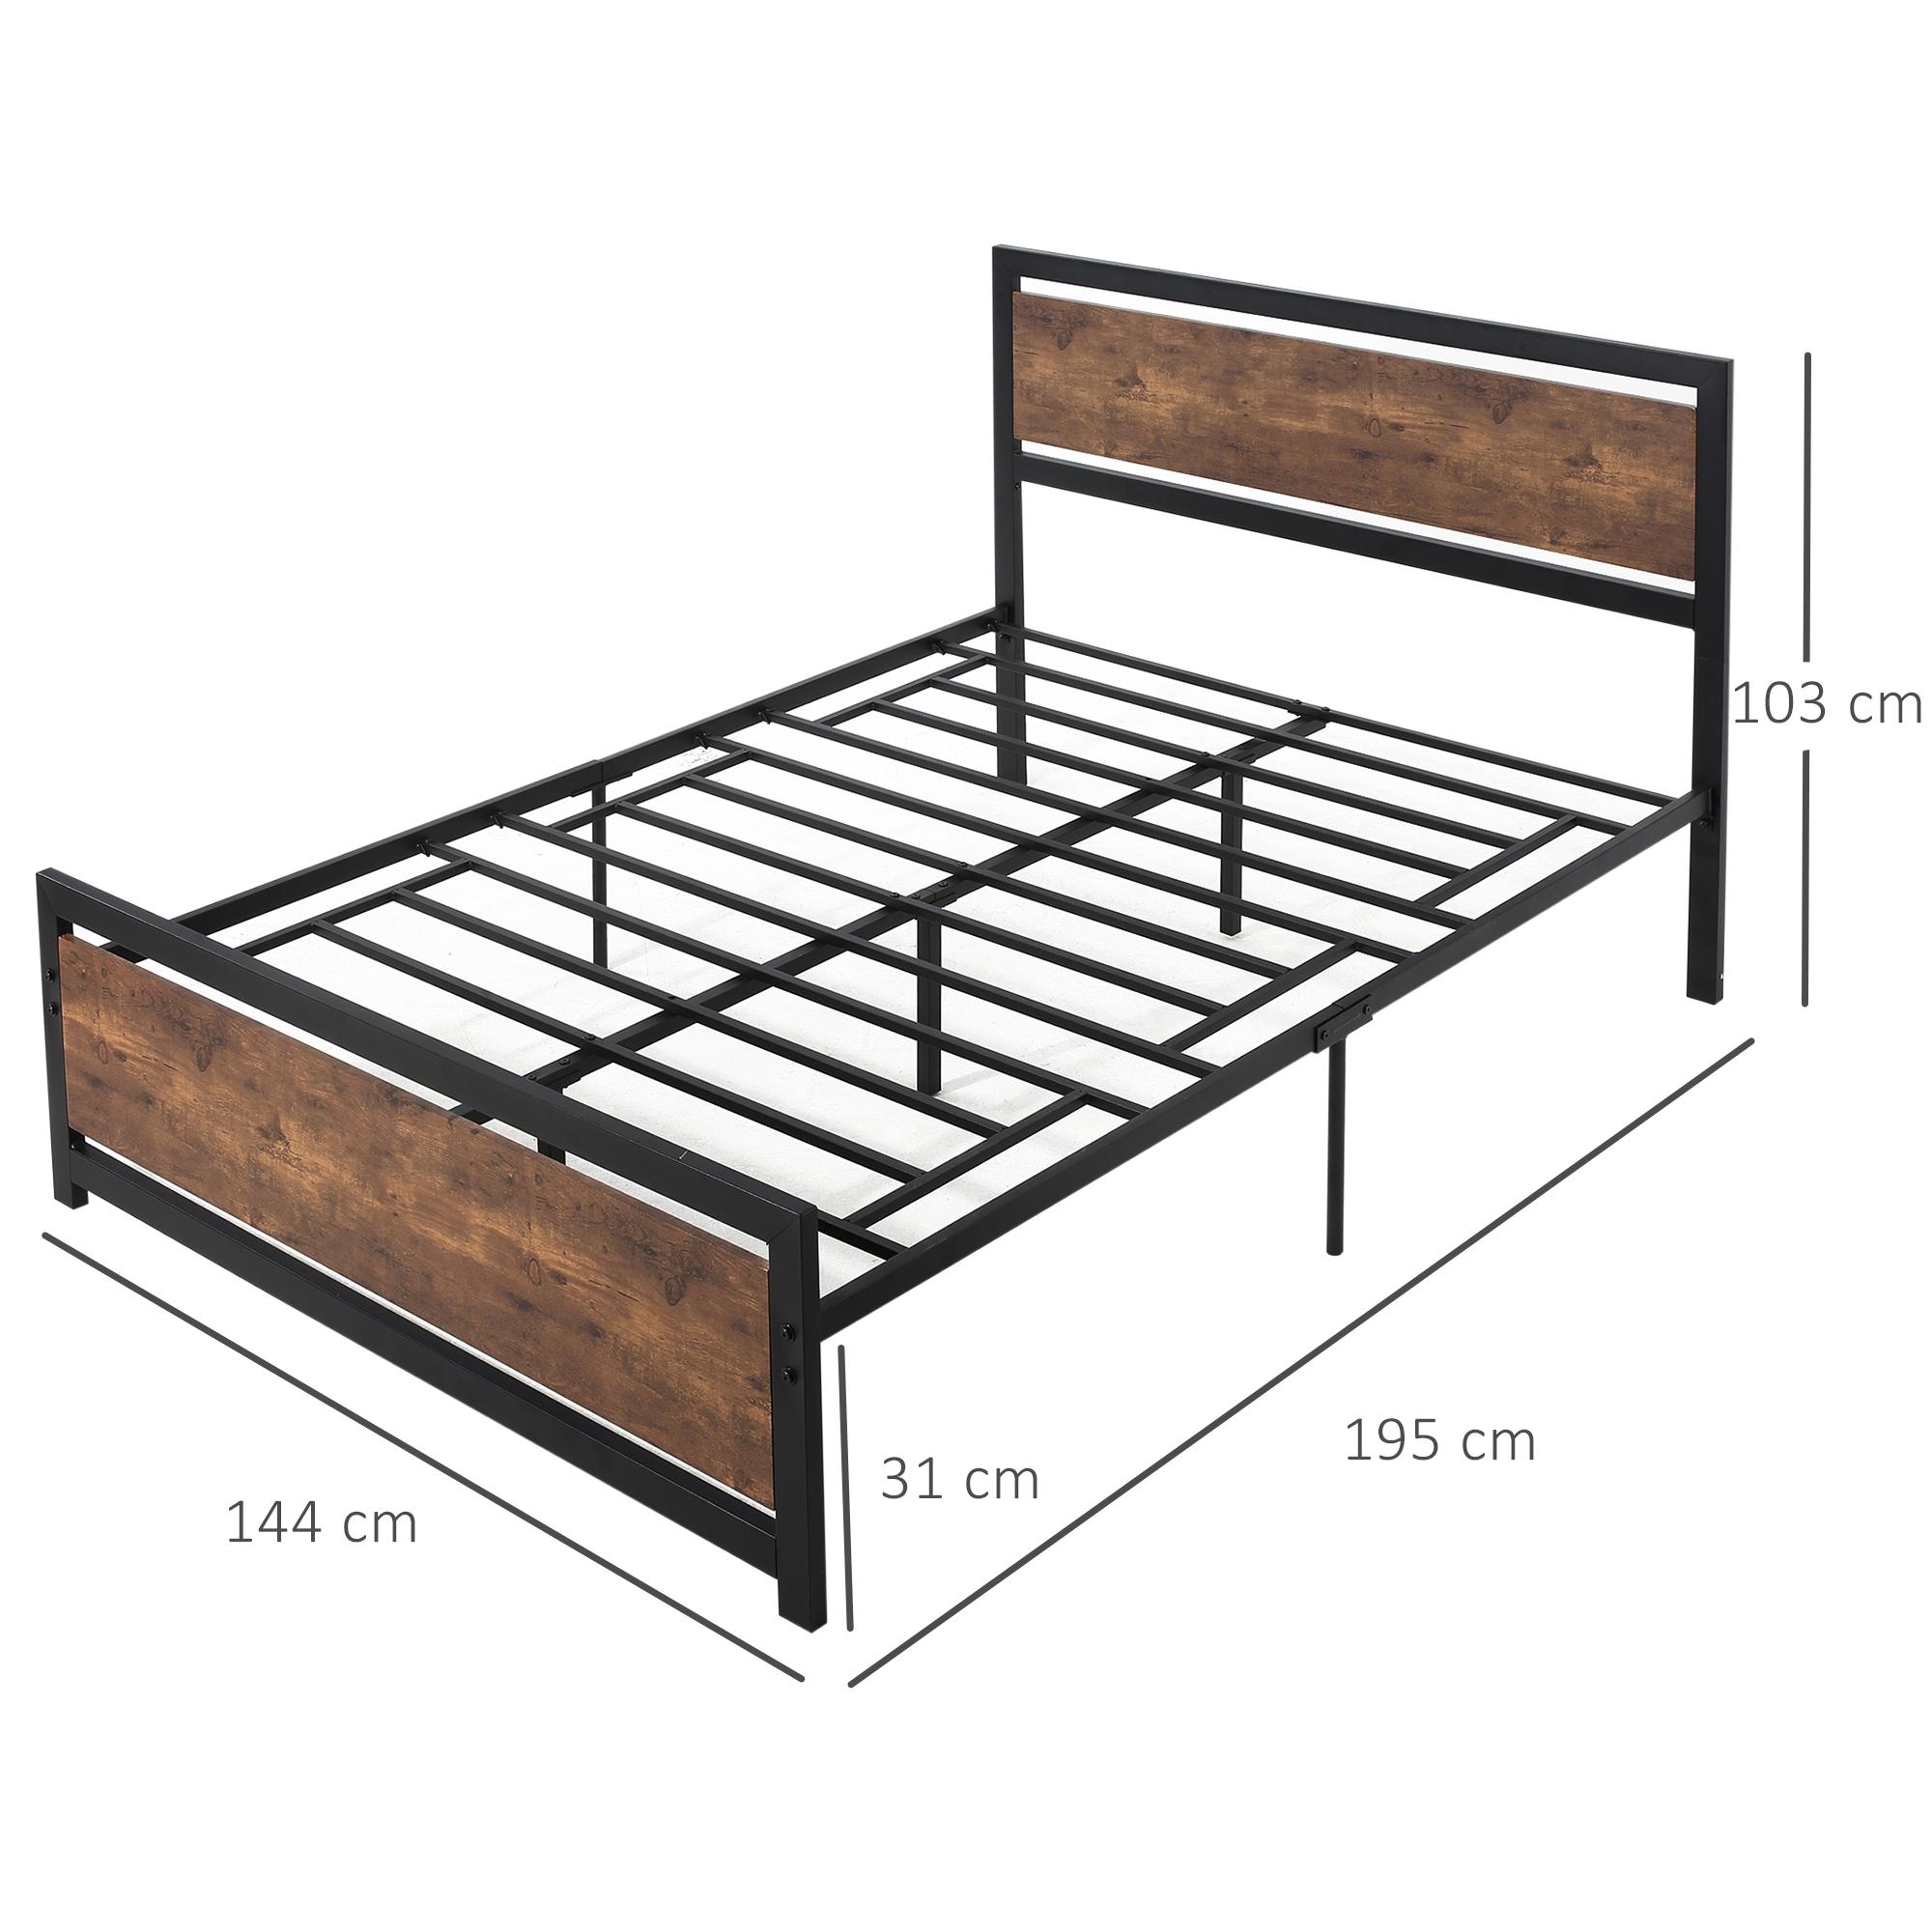 Lit double design industriel - tête de lit, pied de lit et sommier - dim. 195L x 144l x 103H cm - compatible matelas 190L x 140l cm - acier noir MDF aspect bois avec veinage